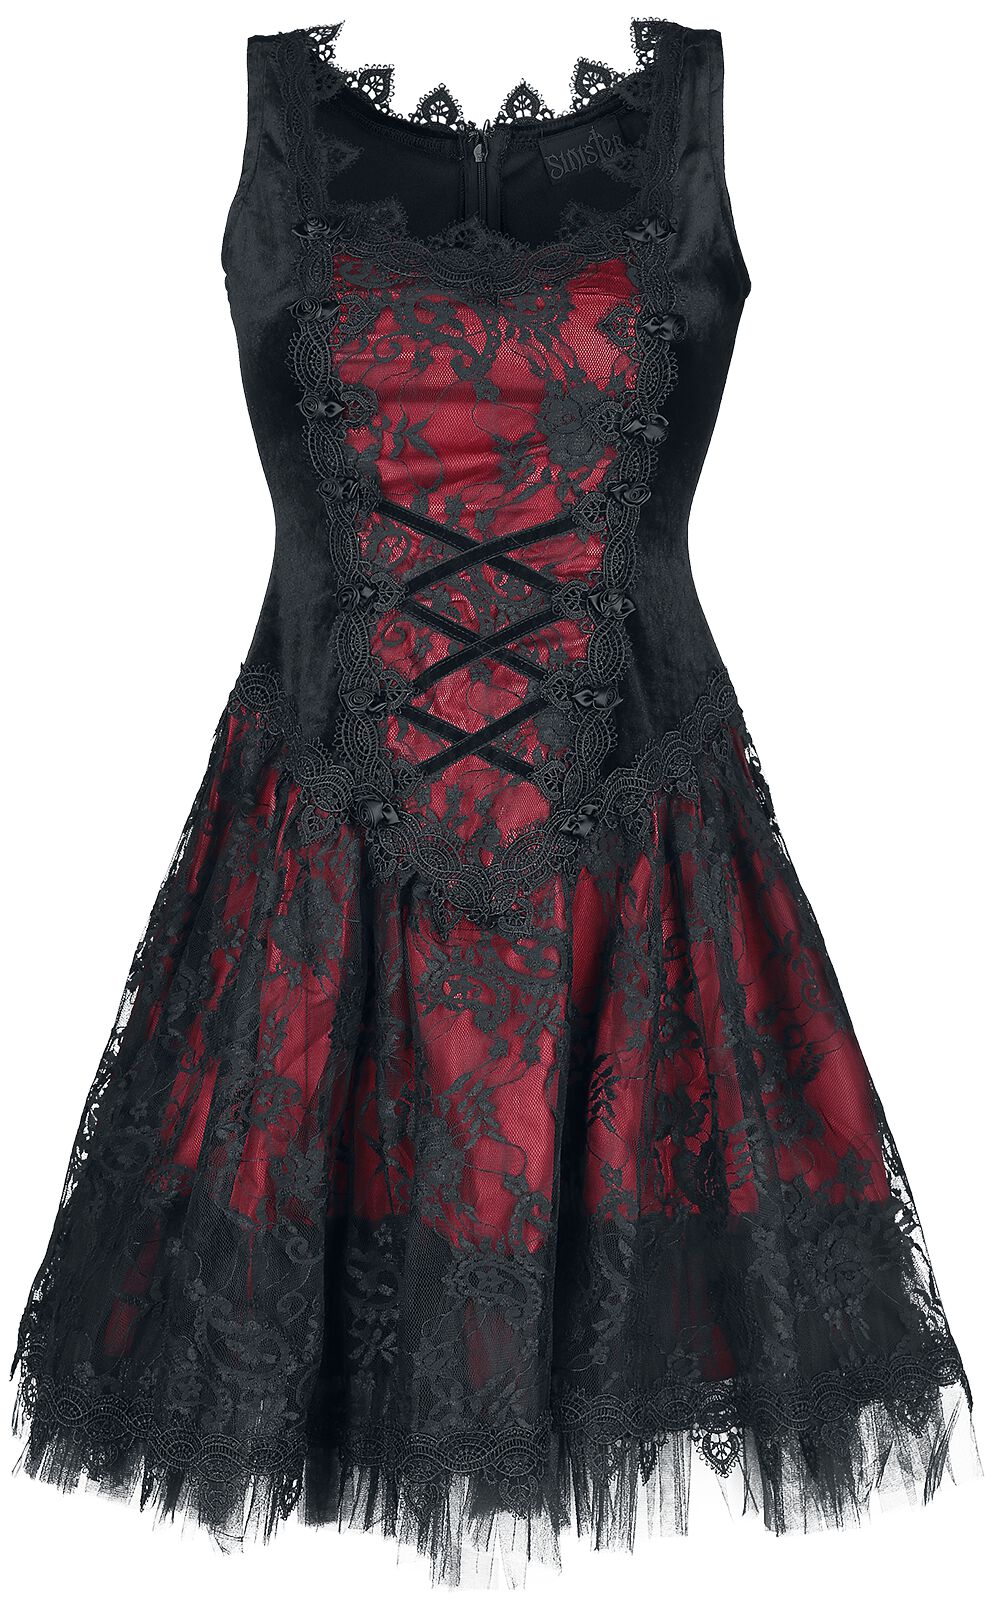 Sinister Gothic Gothic Dress Kurzes Kleid schwarz rot in XL